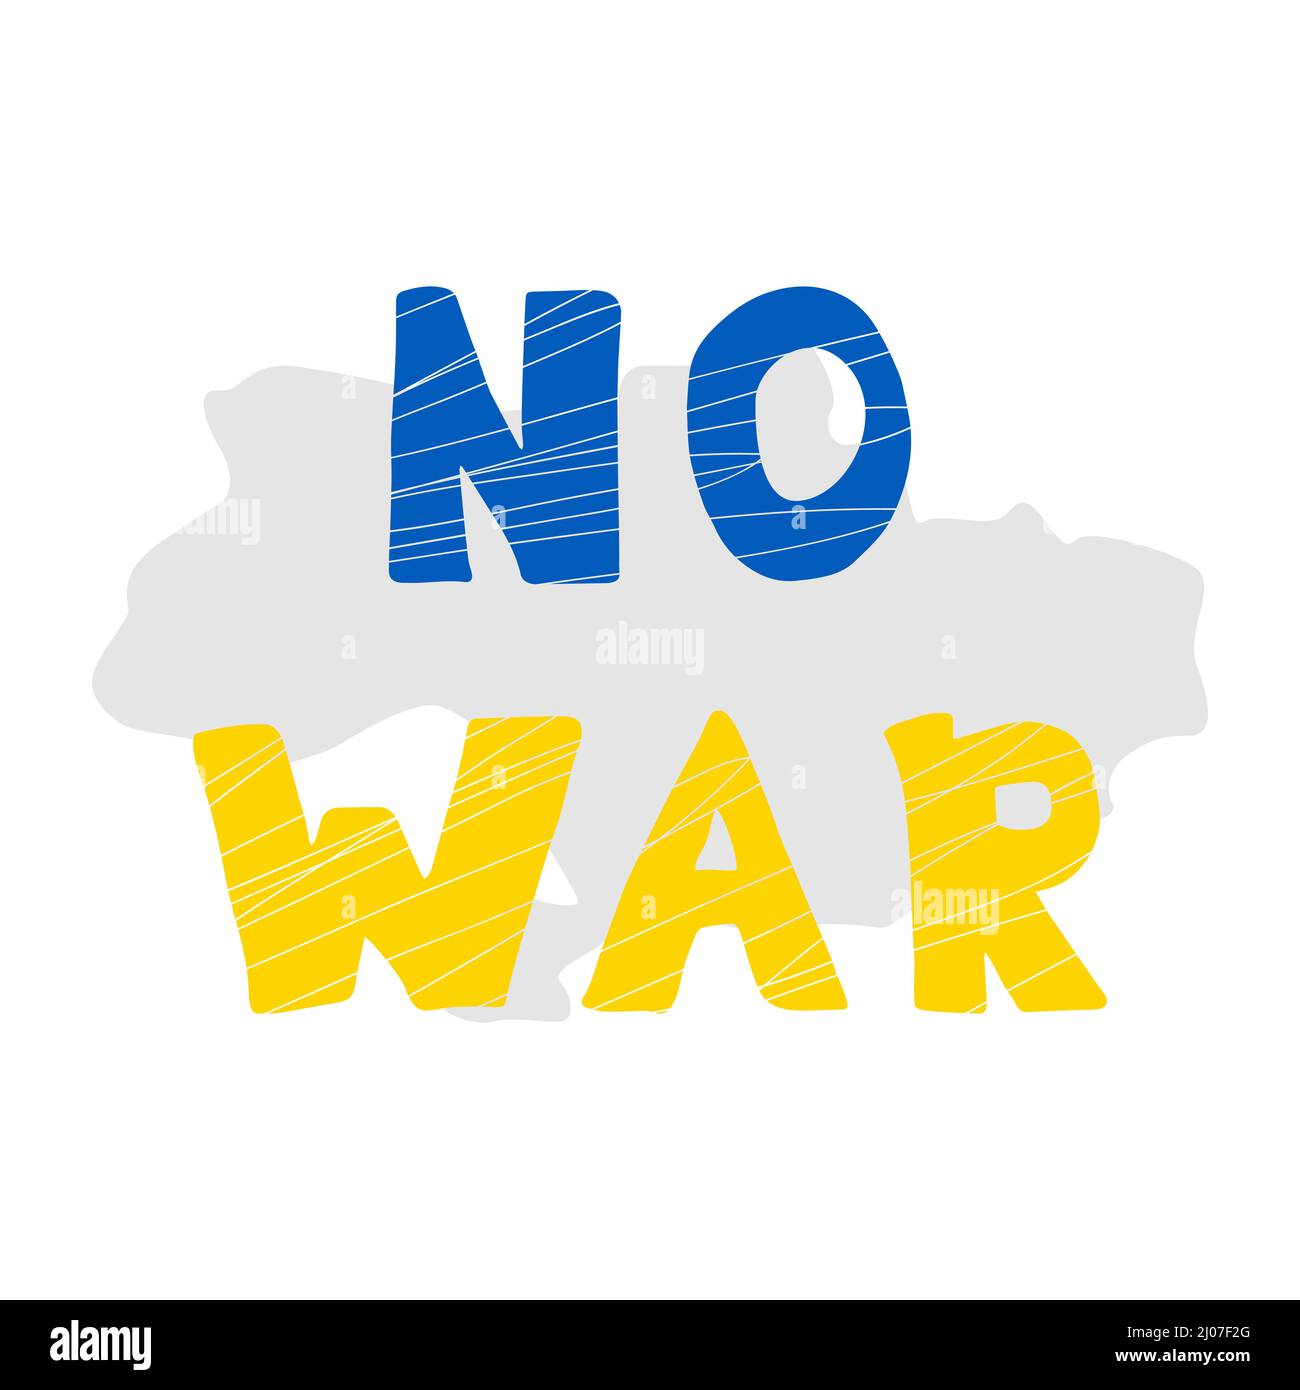 Kein Krieg in der Ukraine Vektor-Poster. Konzept der ukrainischen und russischen Militärkrise, Konflikt zwischen der Ukraine und Russland. Stop war sign. Stock Vektor